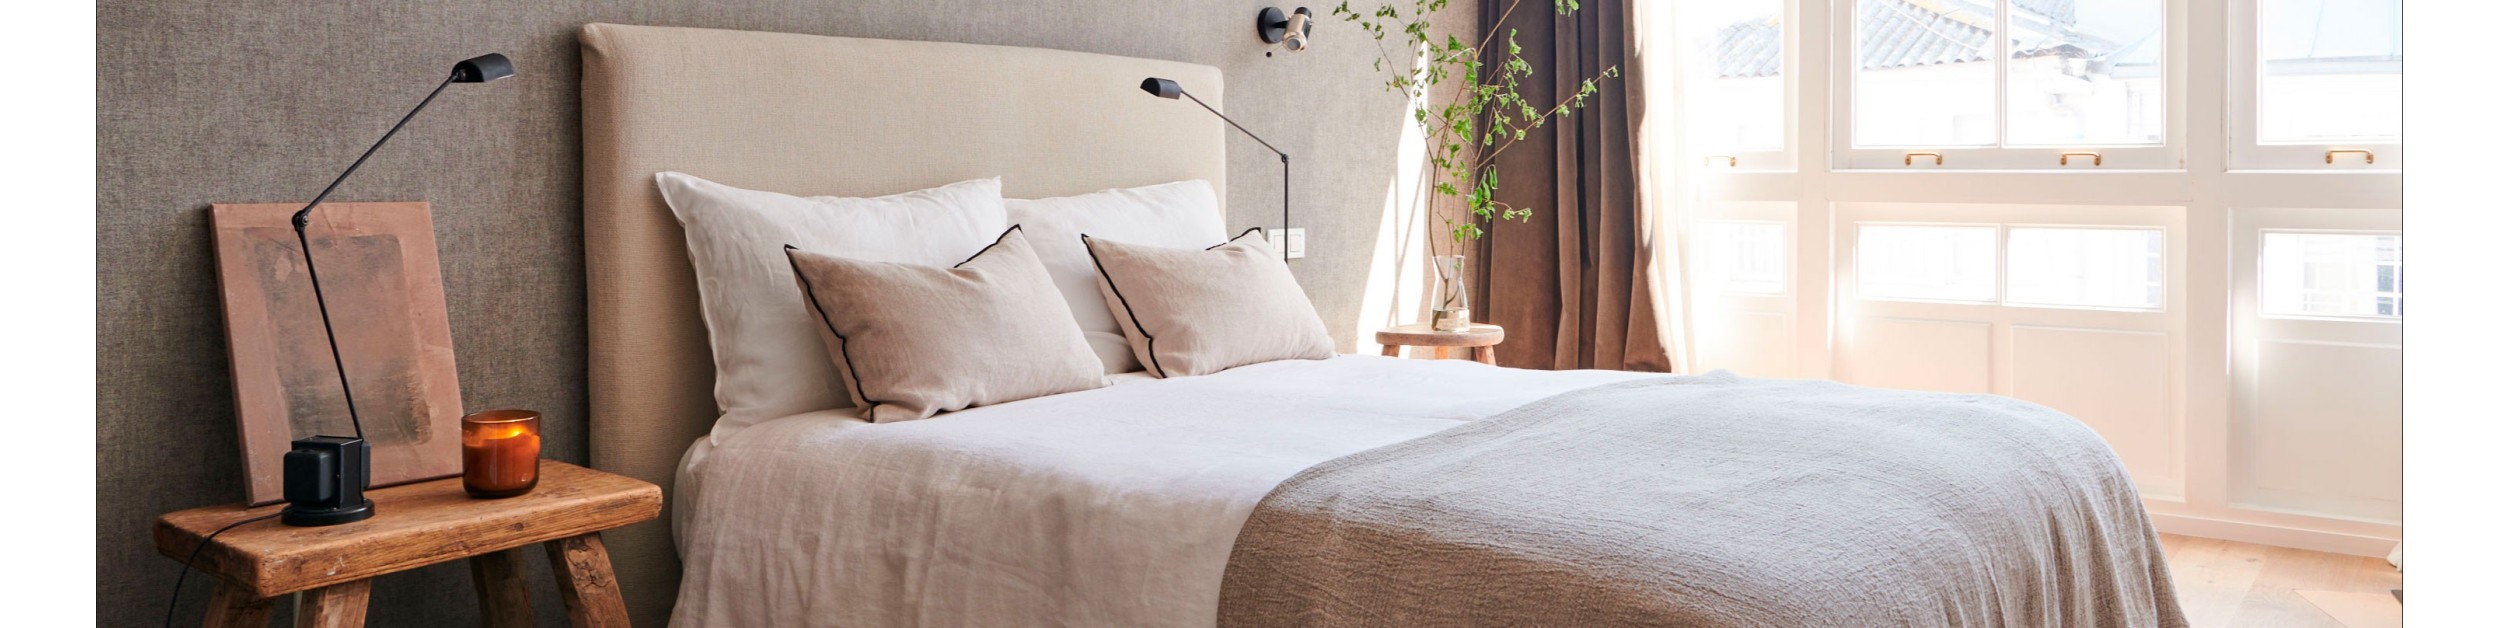 Renueva tu dormitorio con materiales como el algodón y lino